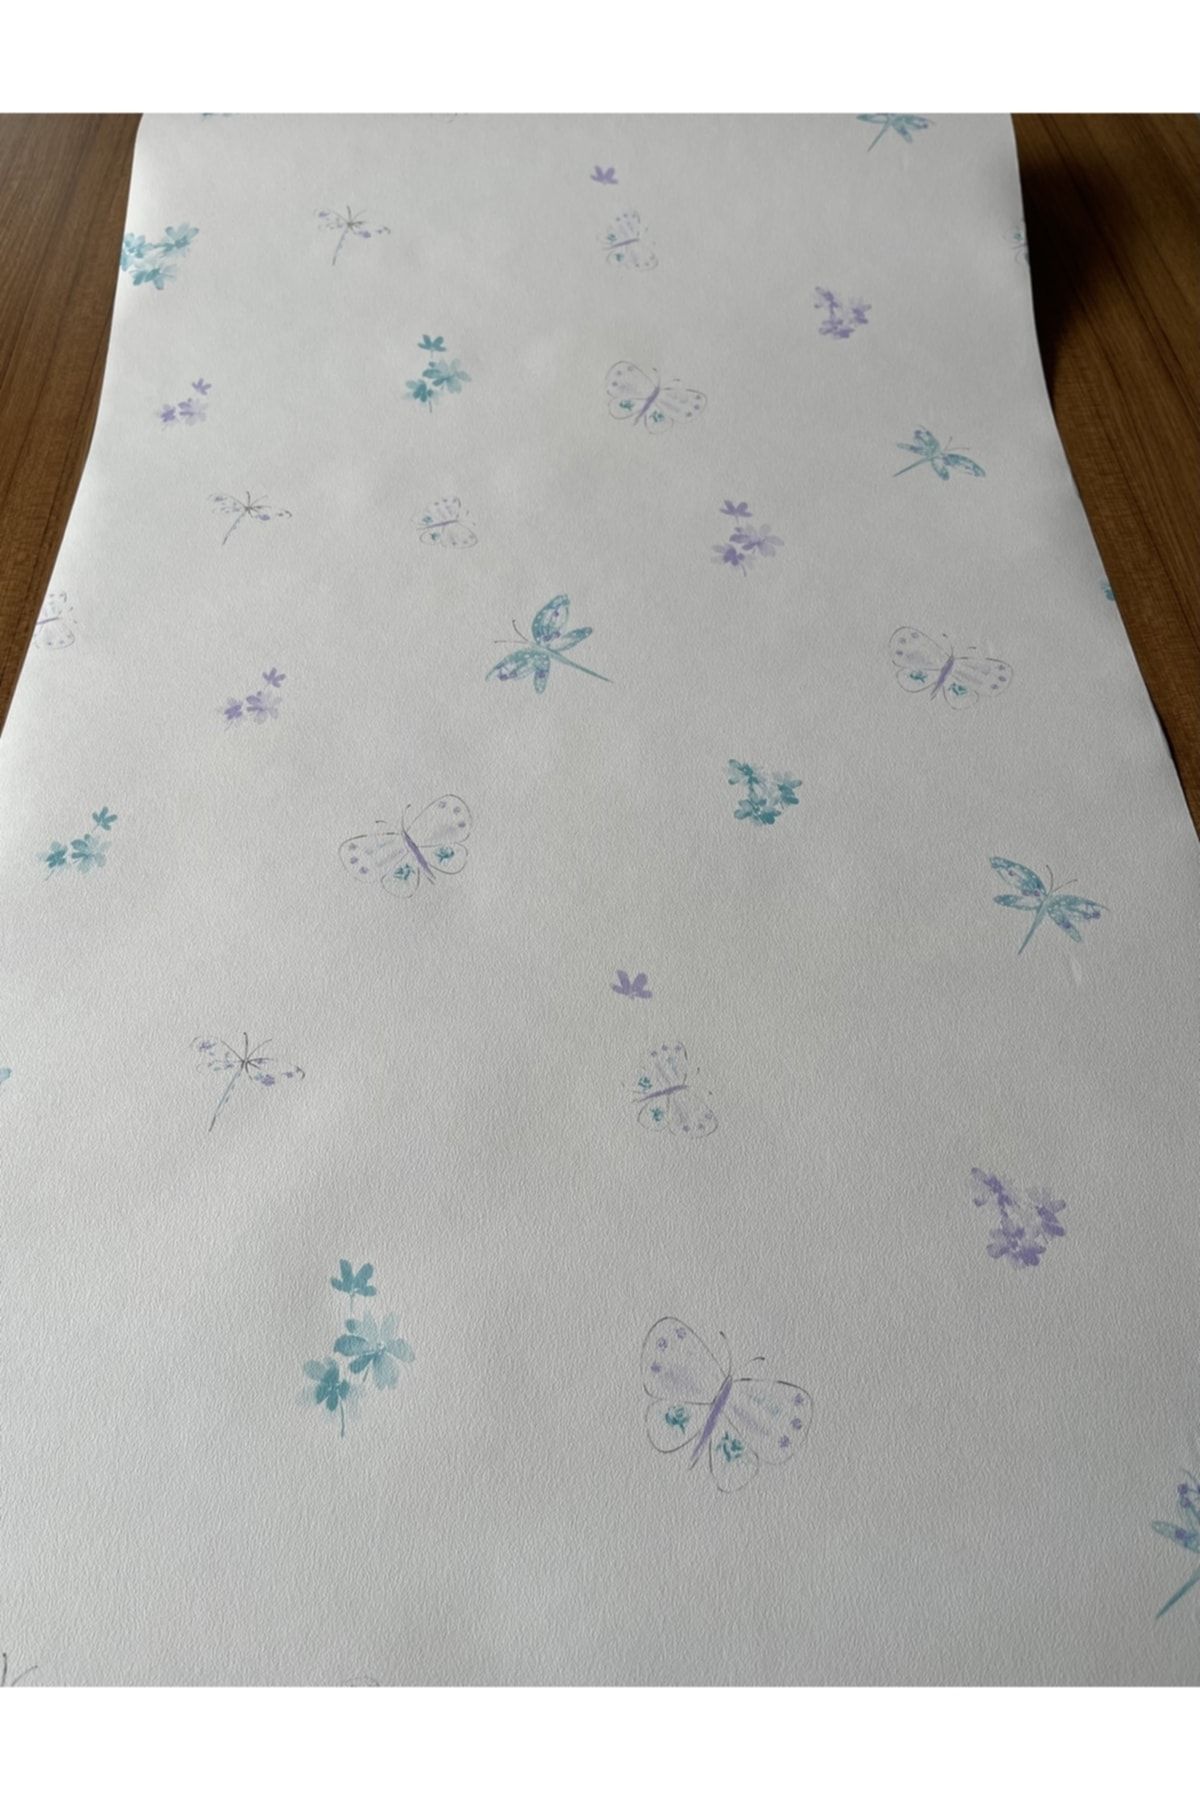 BAŞYAPI DİZAYN Beyaz Zemin Üzeri Mavi-mor Kelebek Desenli Ithal Duvar Kağıdı (5m²)